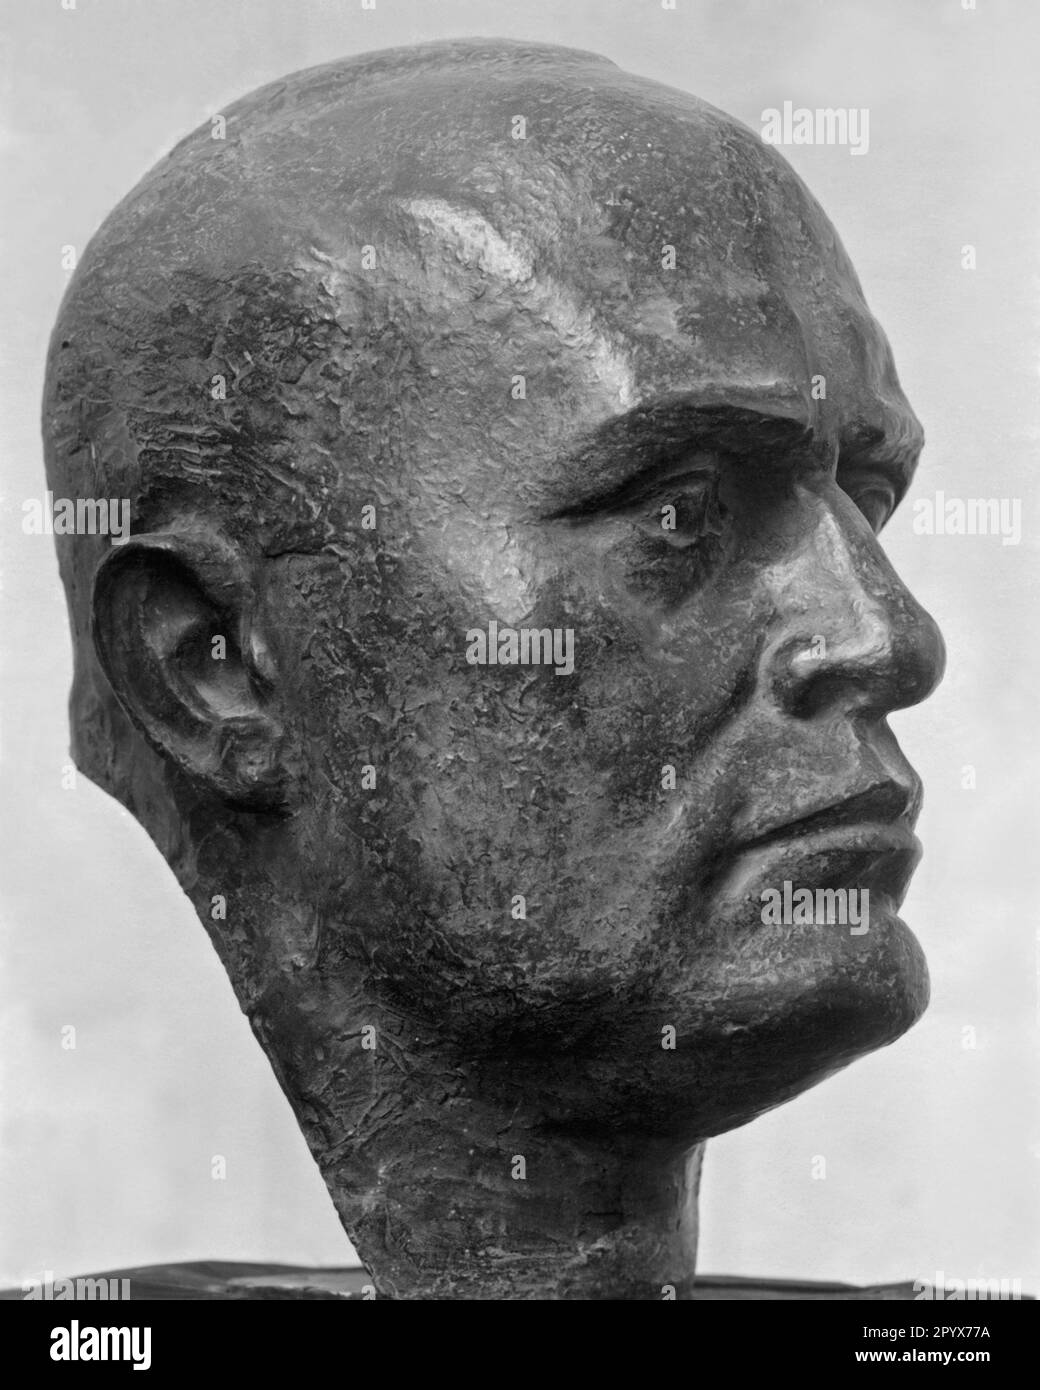 Büste von Benito Mussolinis Kopf, im Profil, aus Bronze. Unbezahltes Foto. [Maschinelle Übersetzung] Stockfoto